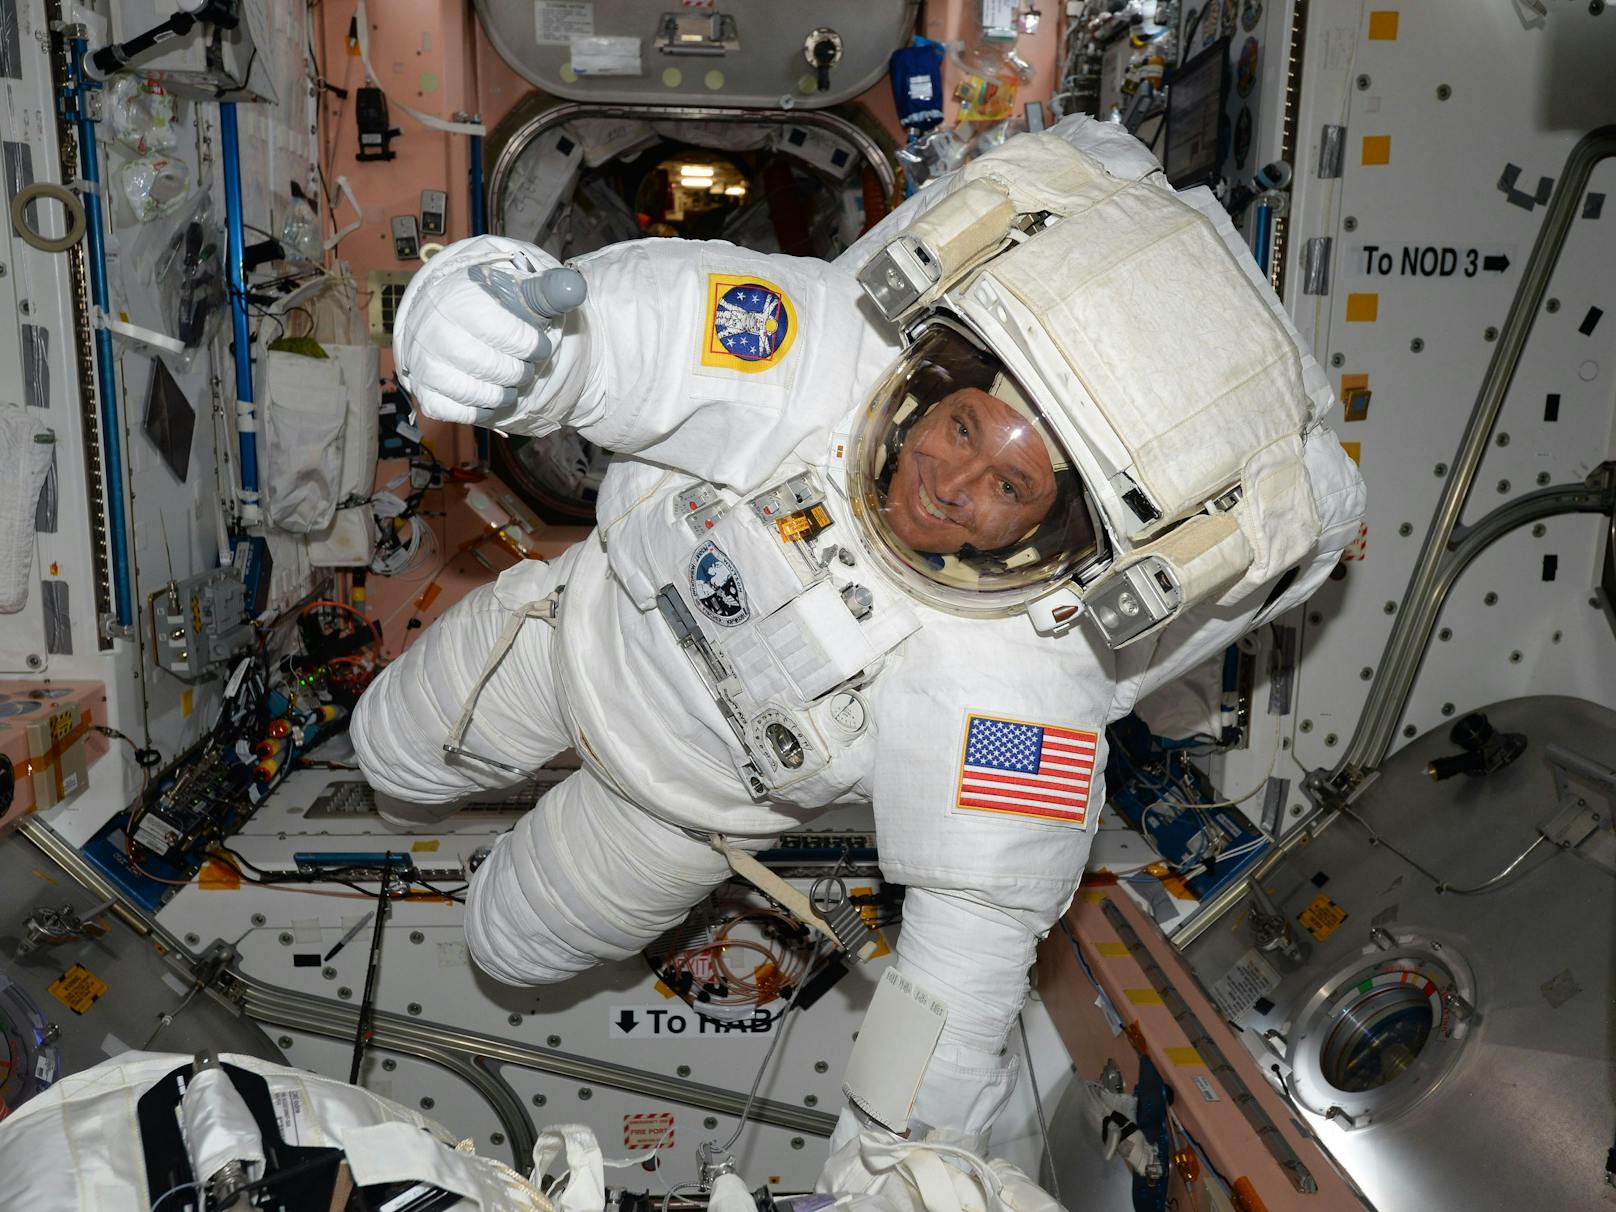 Derzeit befinden sich sieben Astronauten – vier aus den USA, zwei aus Russland und einer aus Deutschland – auf der ISS.